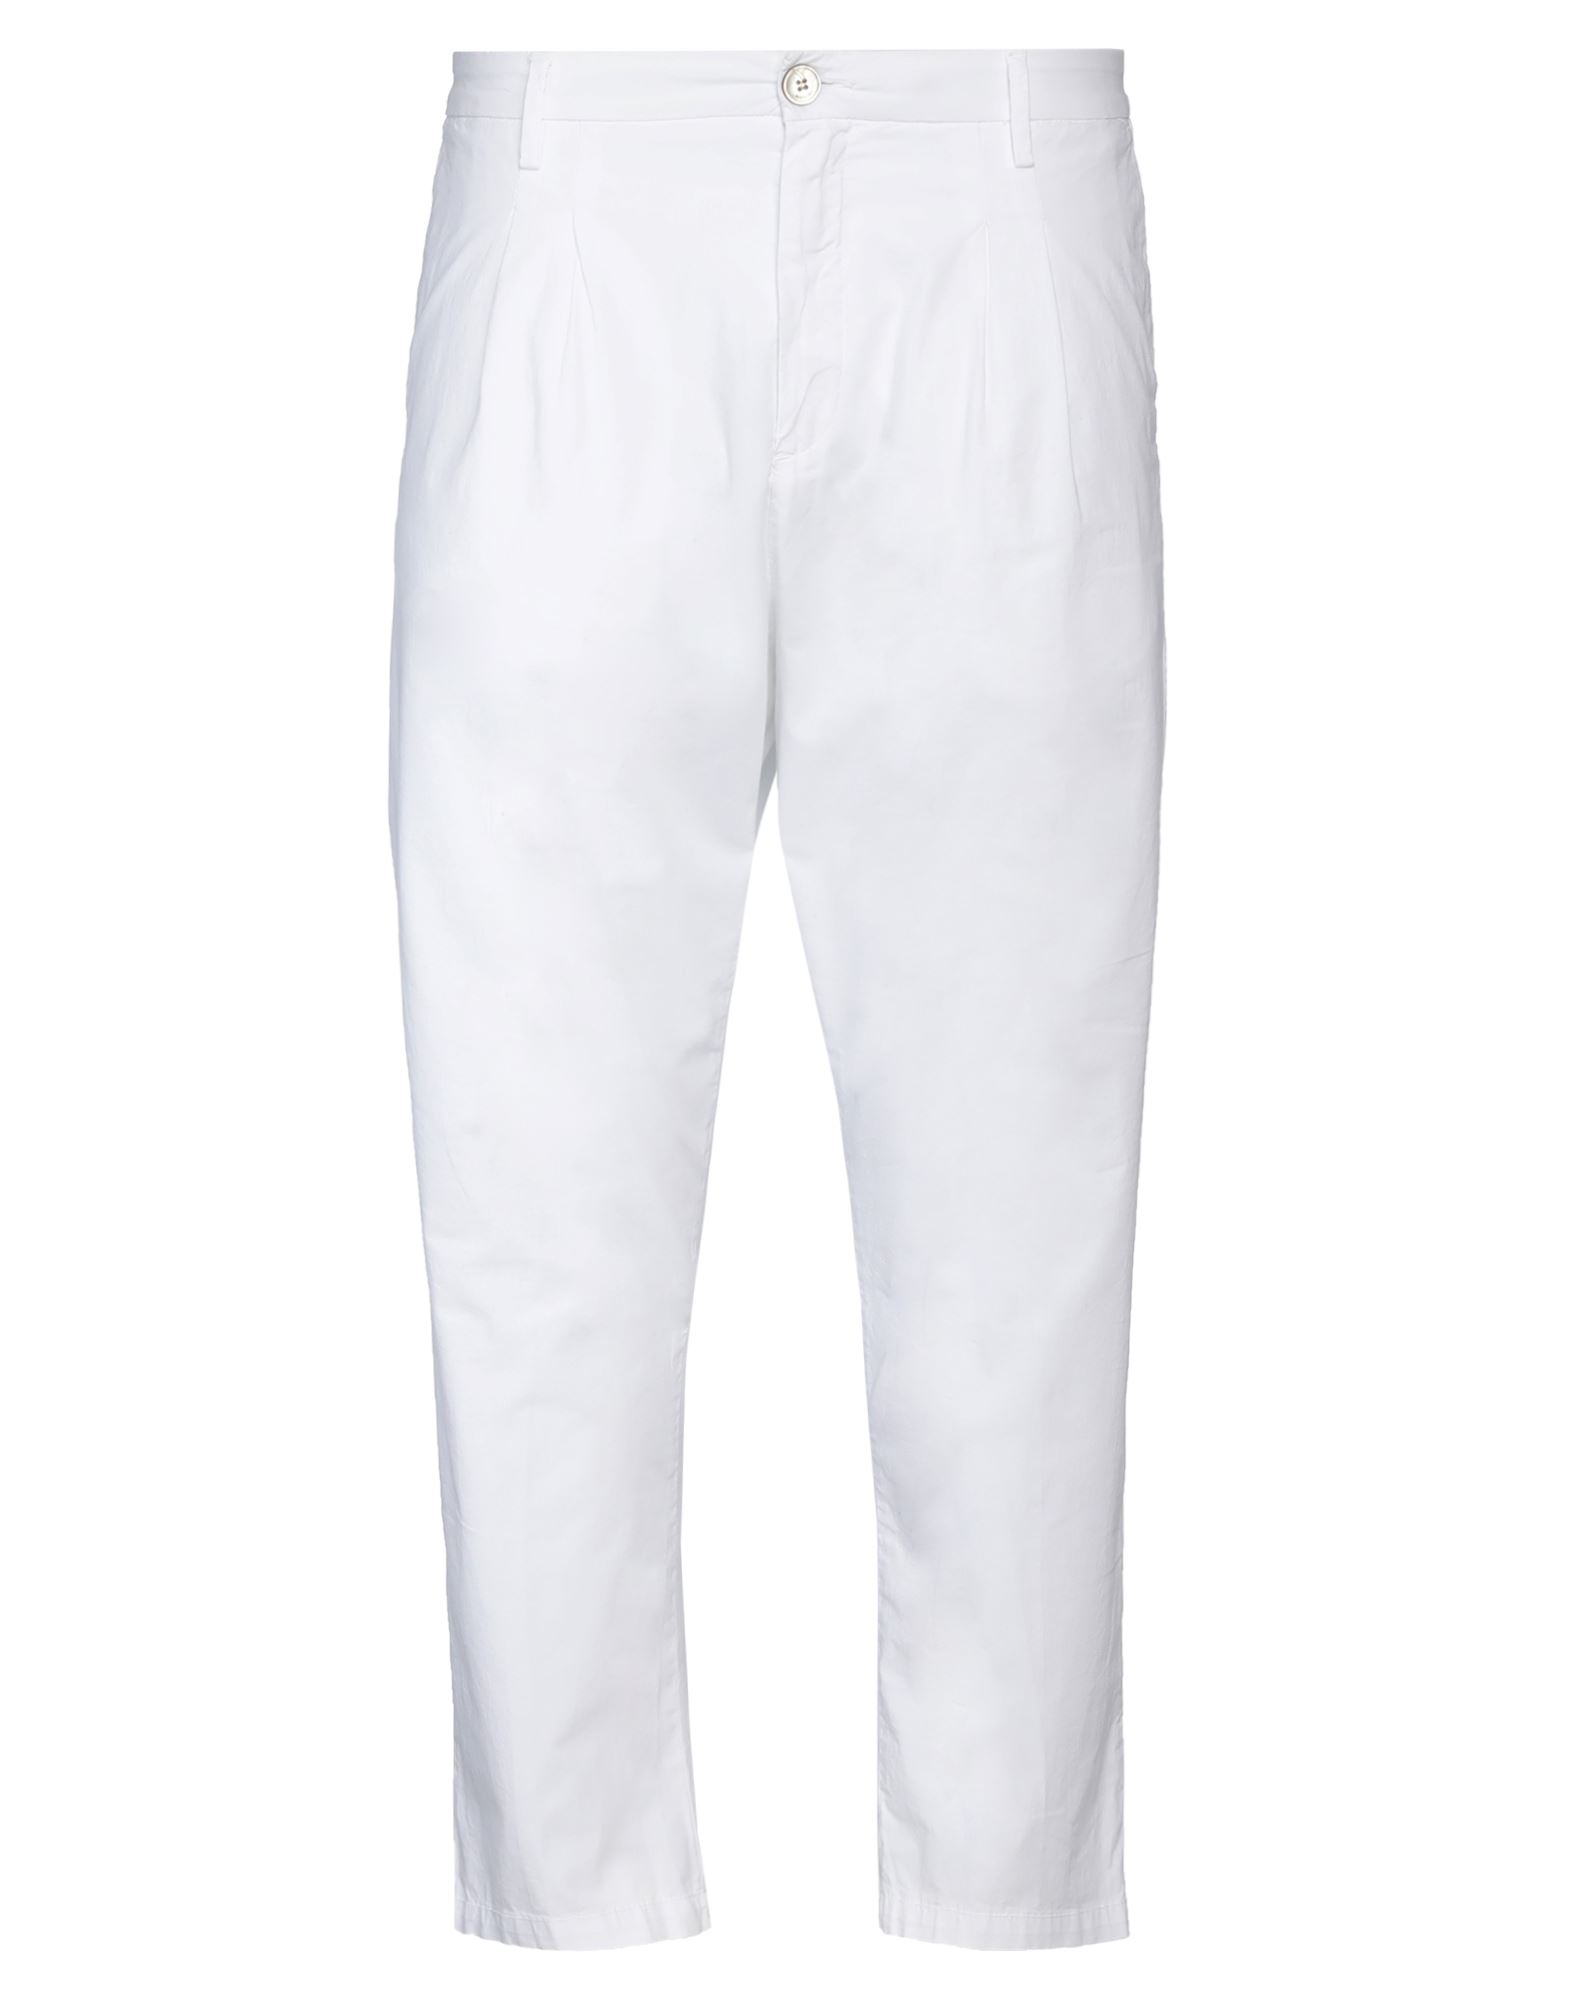 Shop Aglini Man Pants White Size 29 Cotton, Elastane